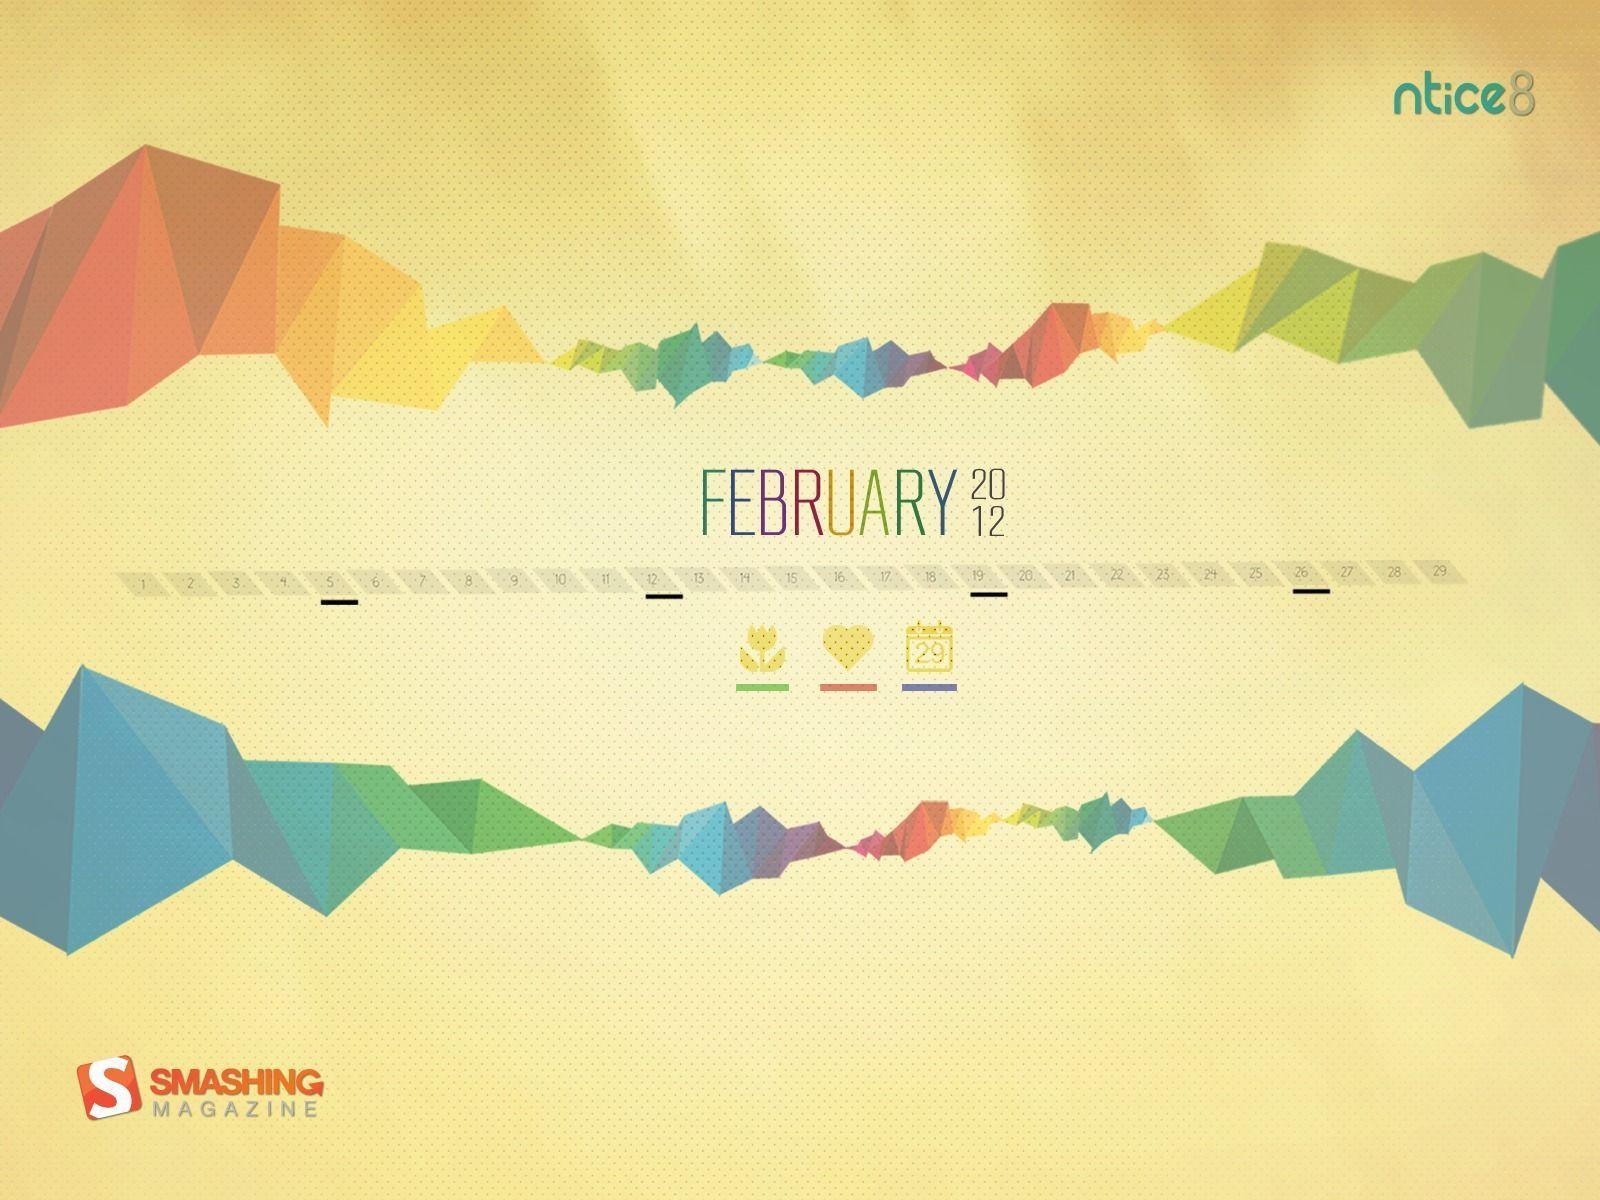 Desktop Wallpaper Calendar: February 2012